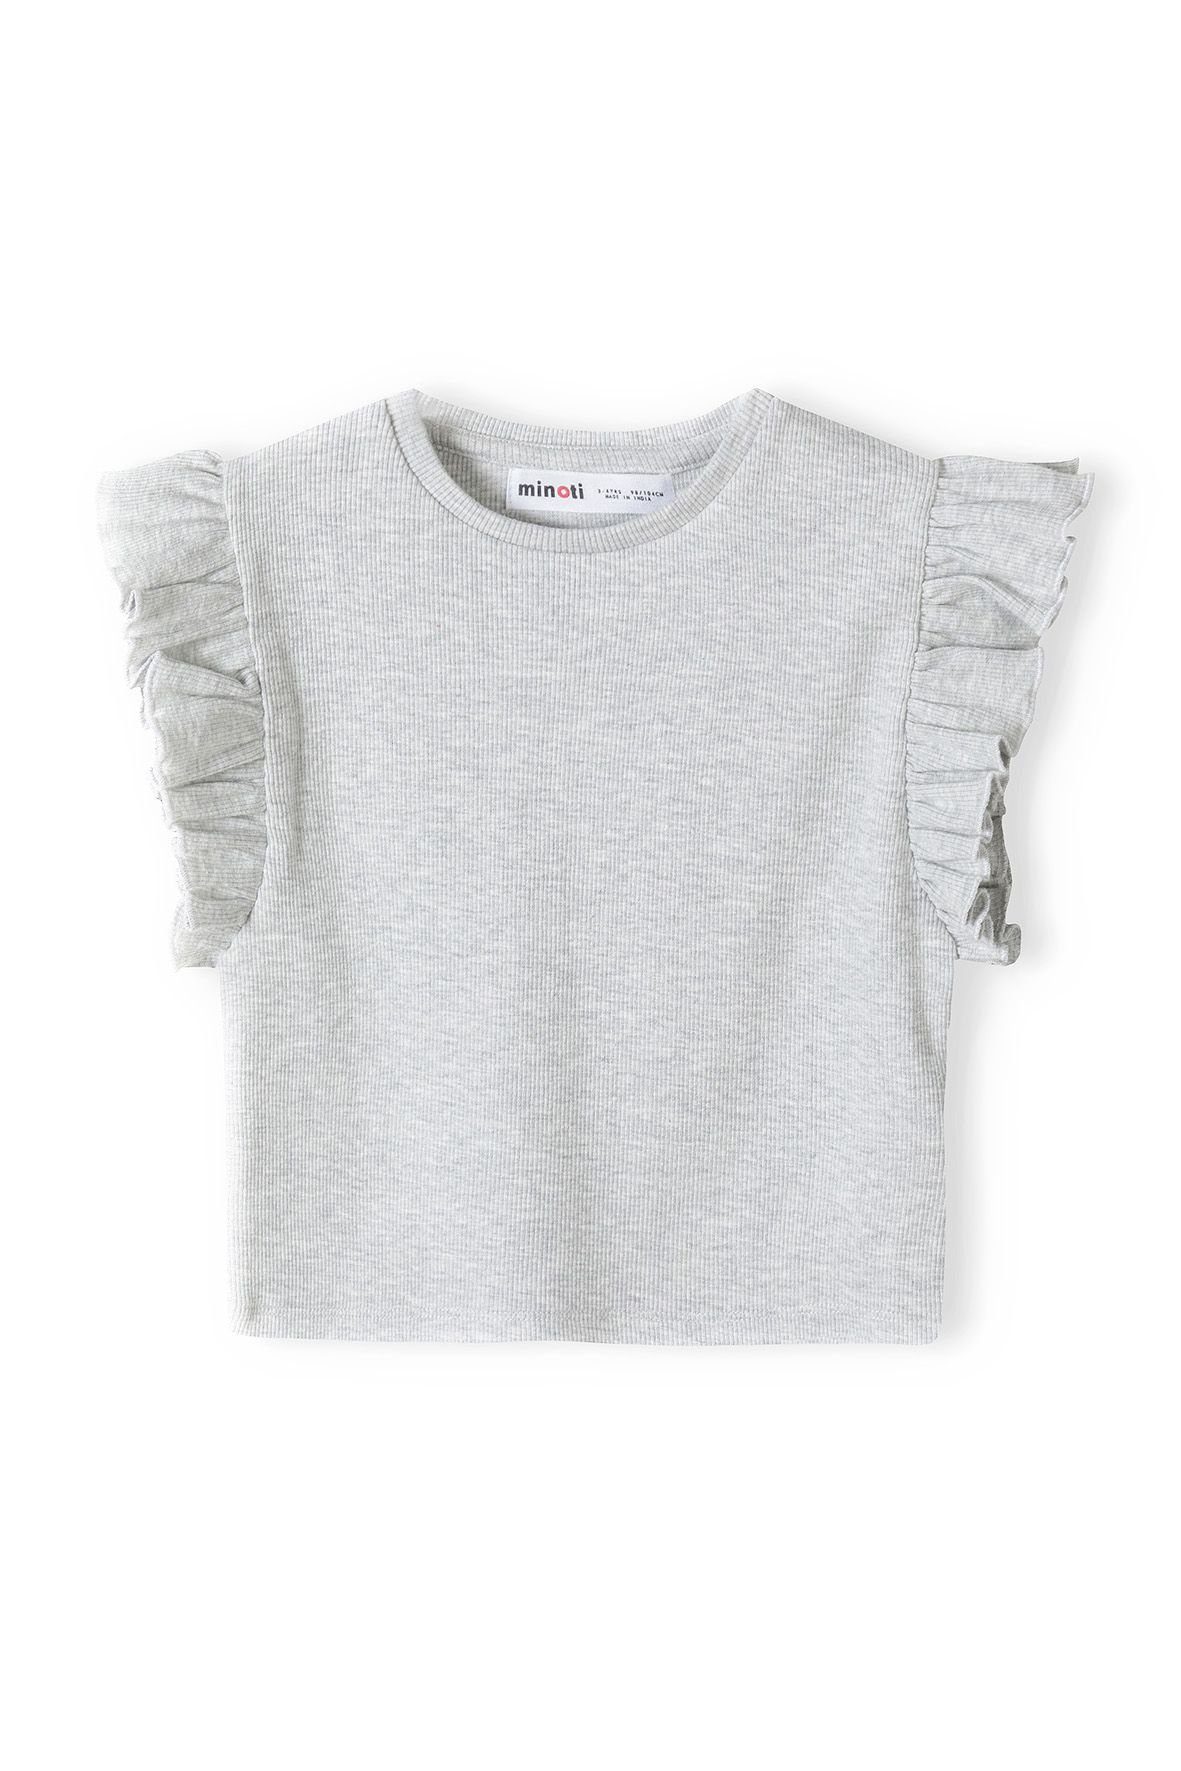 MINOTI T-Shirt Rippshirt (12m-14y) Grau